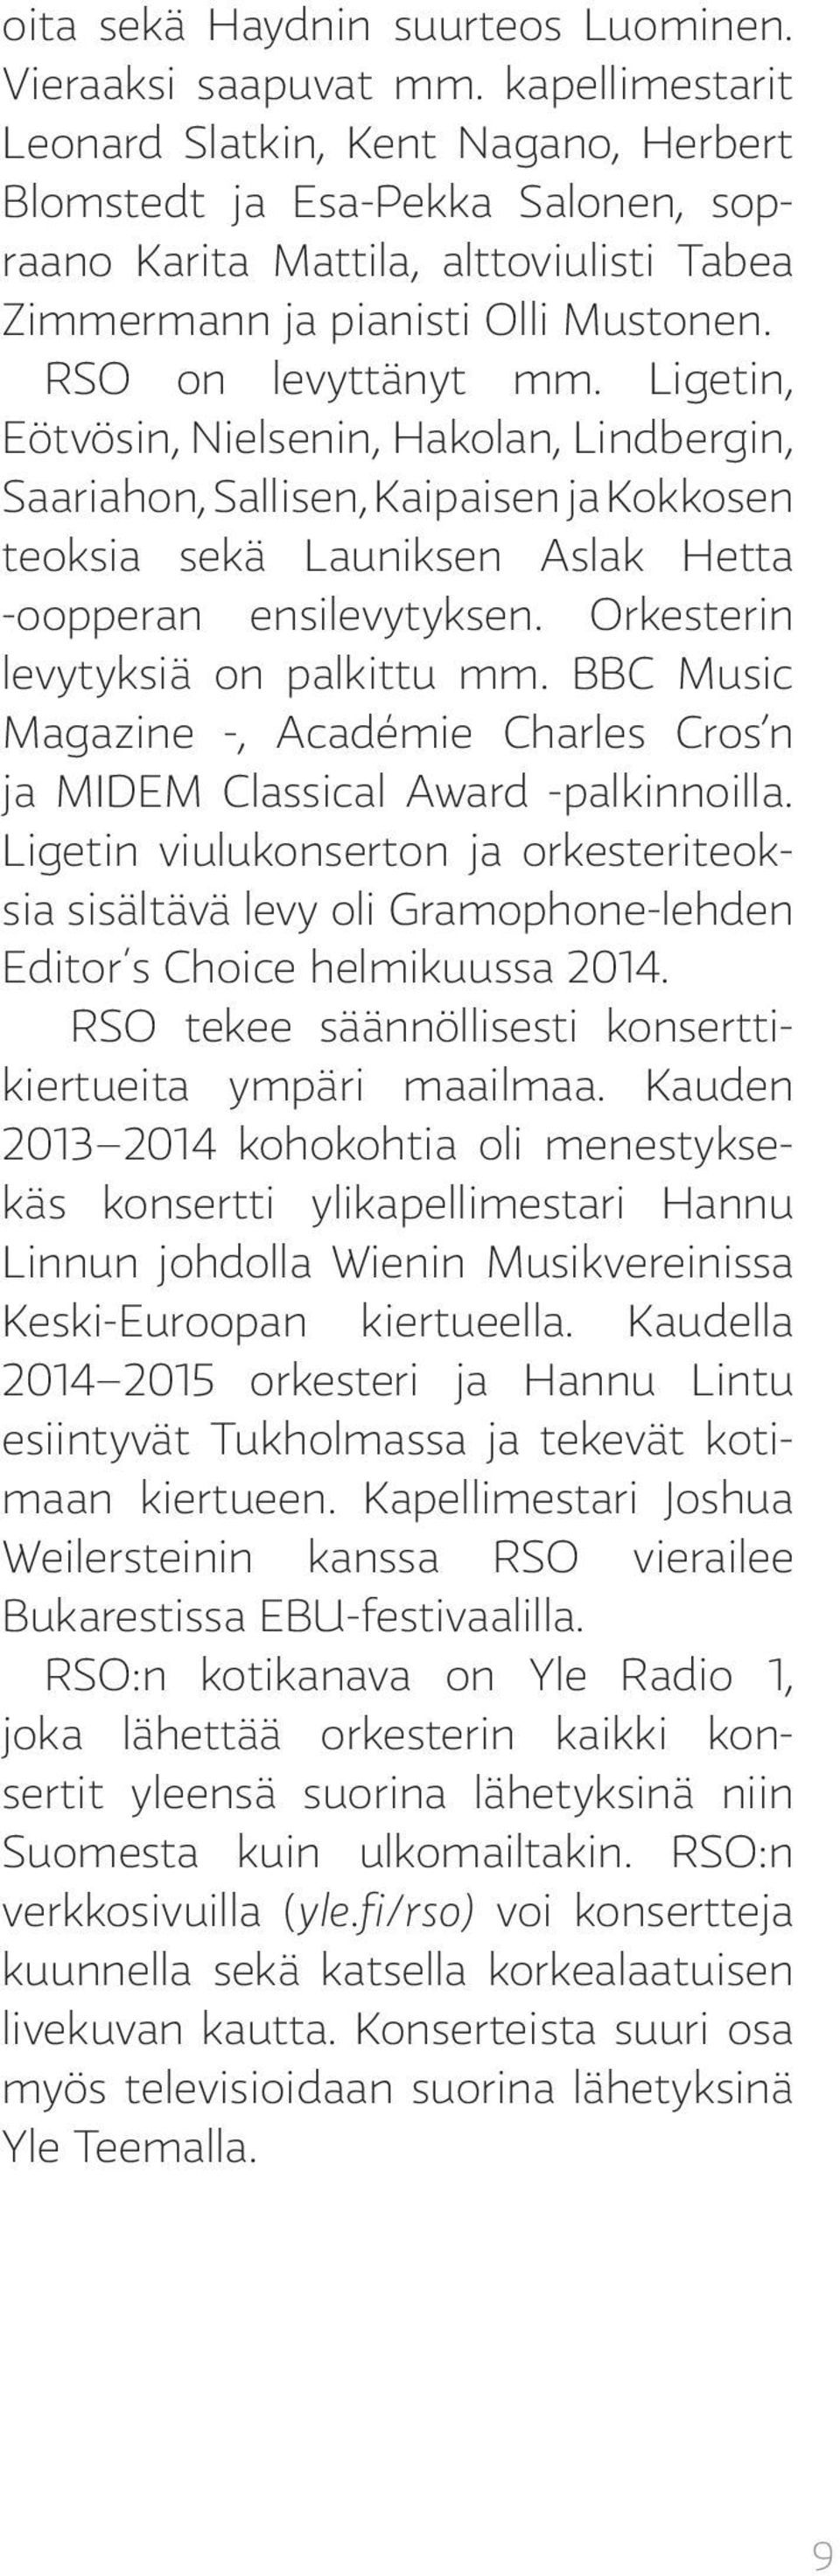 Ligetin, Eötvösin, Nielsenin, Hakolan, Lindbergin, Saariahon, Sallisen, Kaipaisen ja Kokkosen teoksia sekä Launiksen Aslak Hetta -oopperan ensilevytyksen. Orkesterin levytyksiä on palkittu mm.